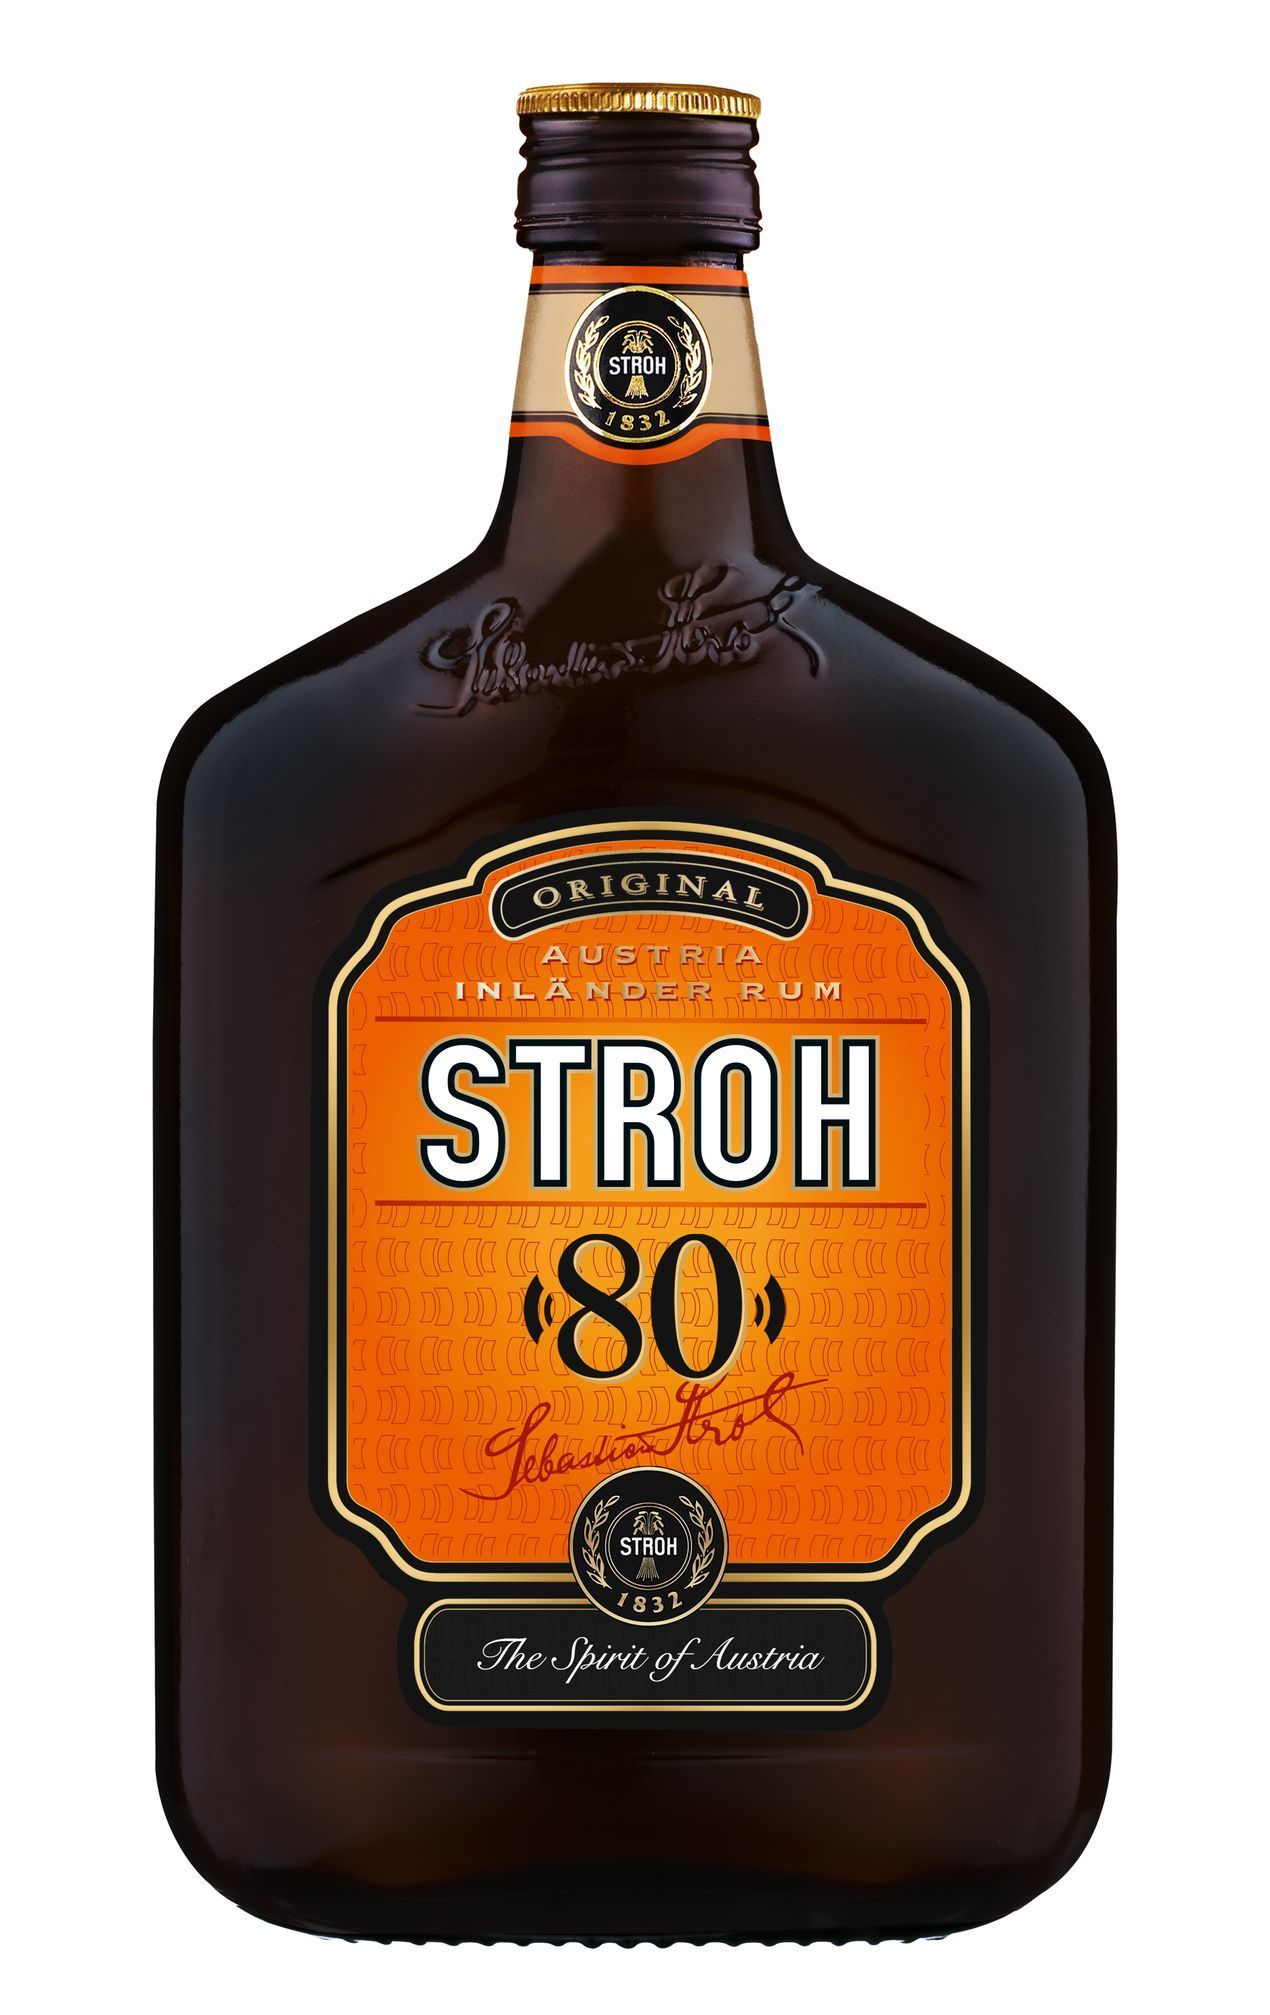 Stroh Rum